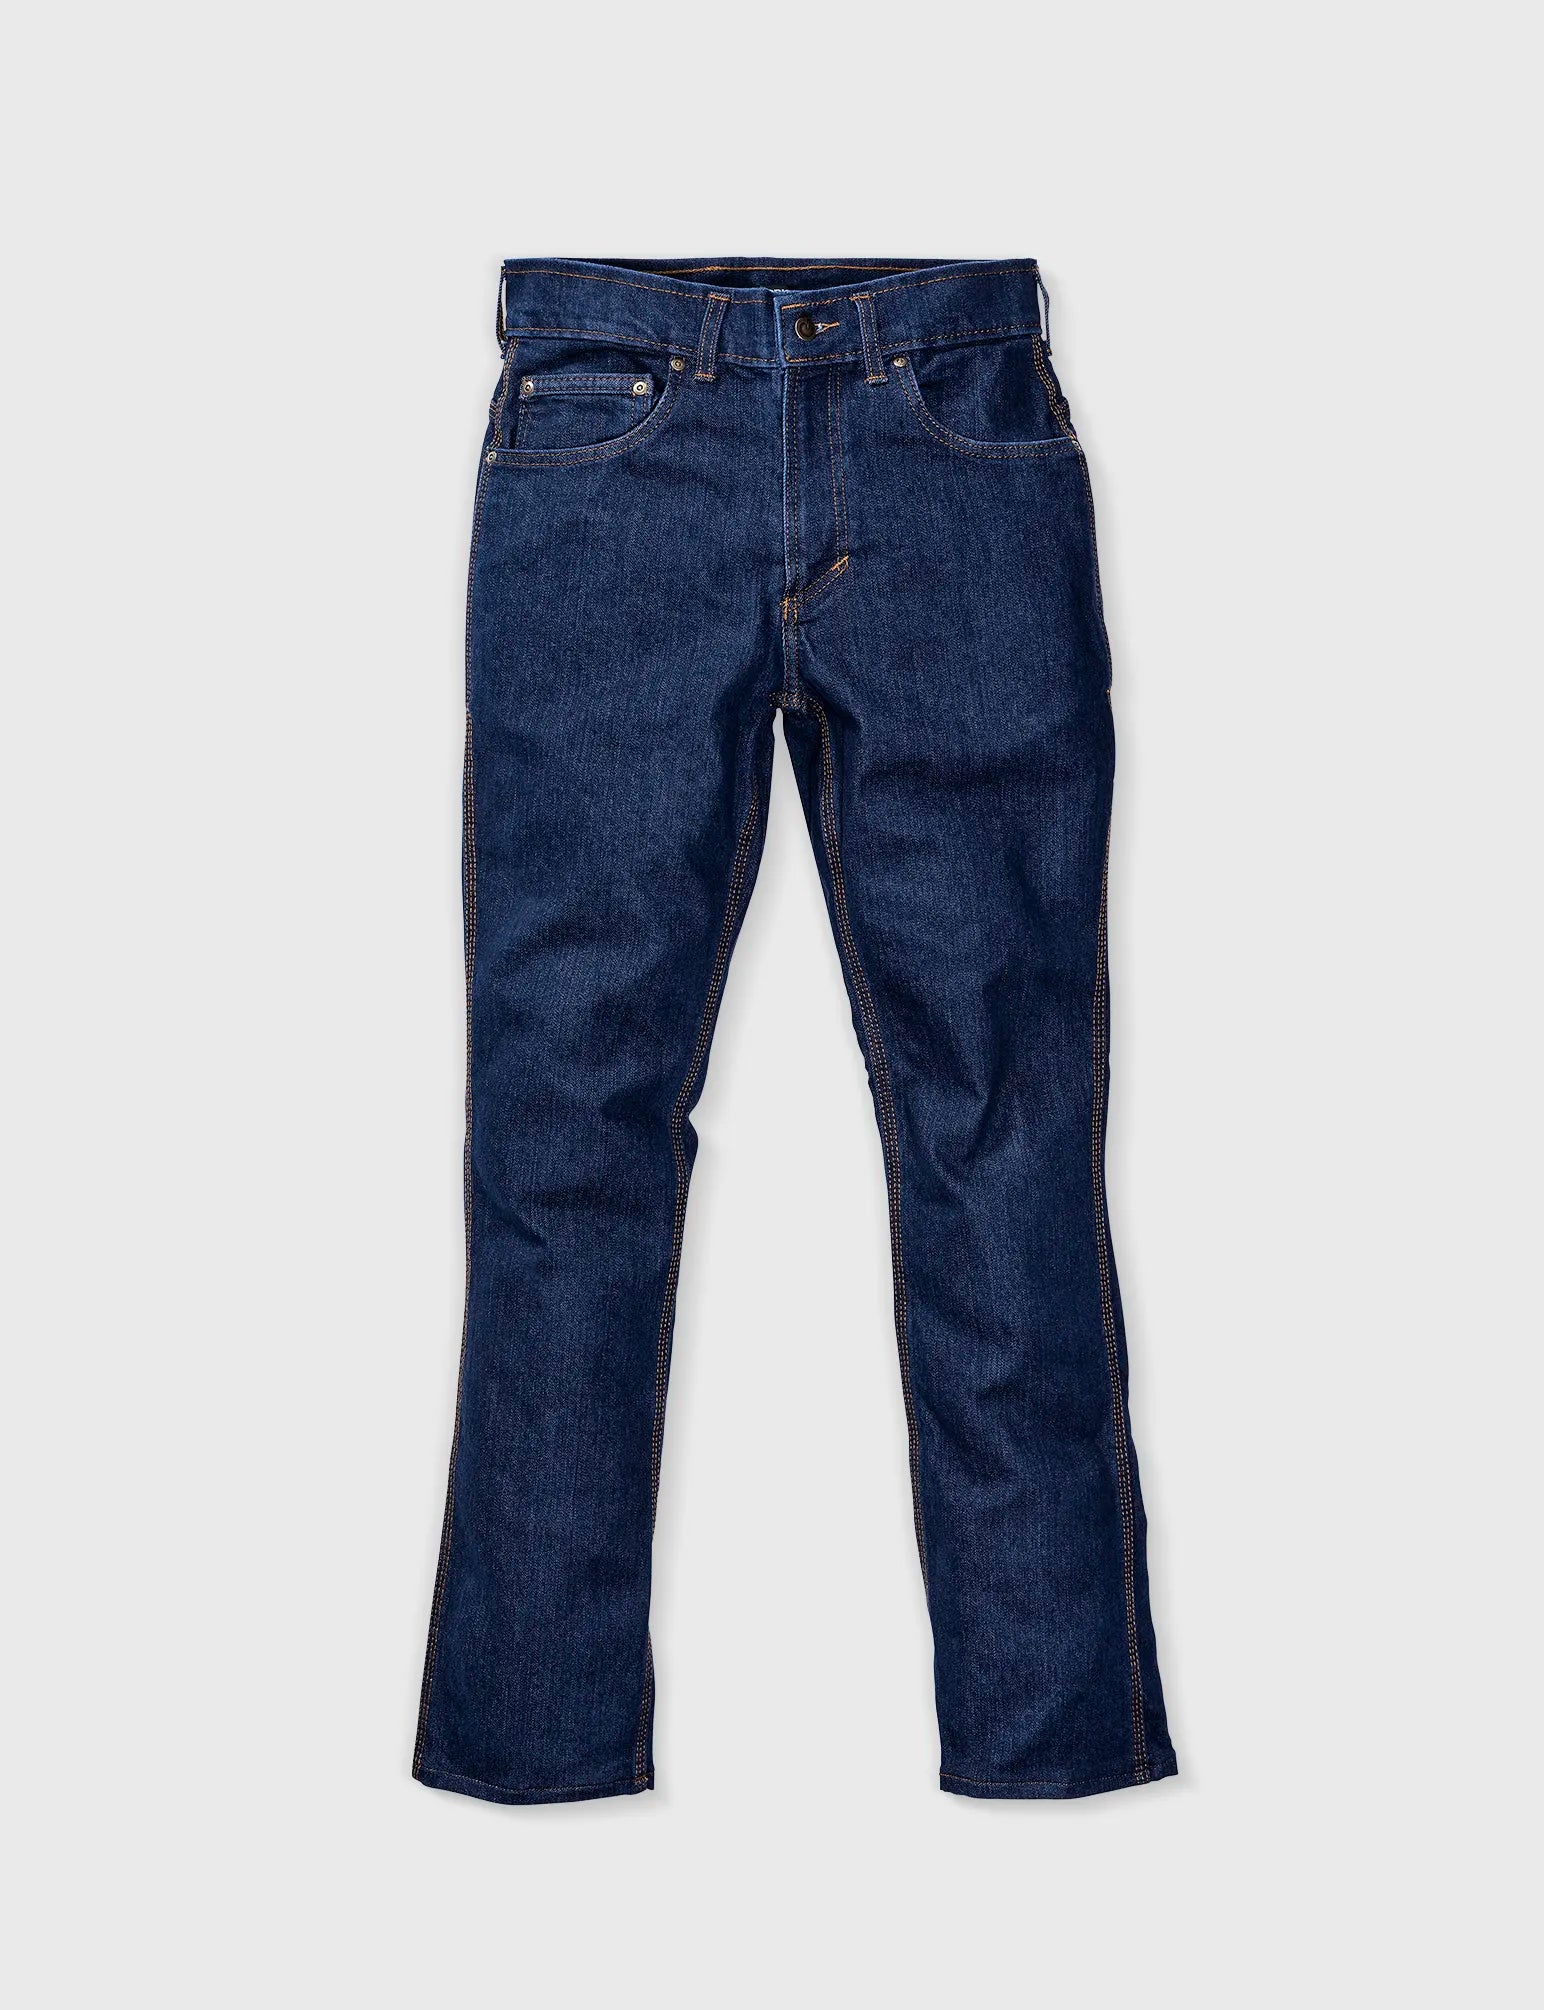 American-made Blue Jeans – ORIGIN